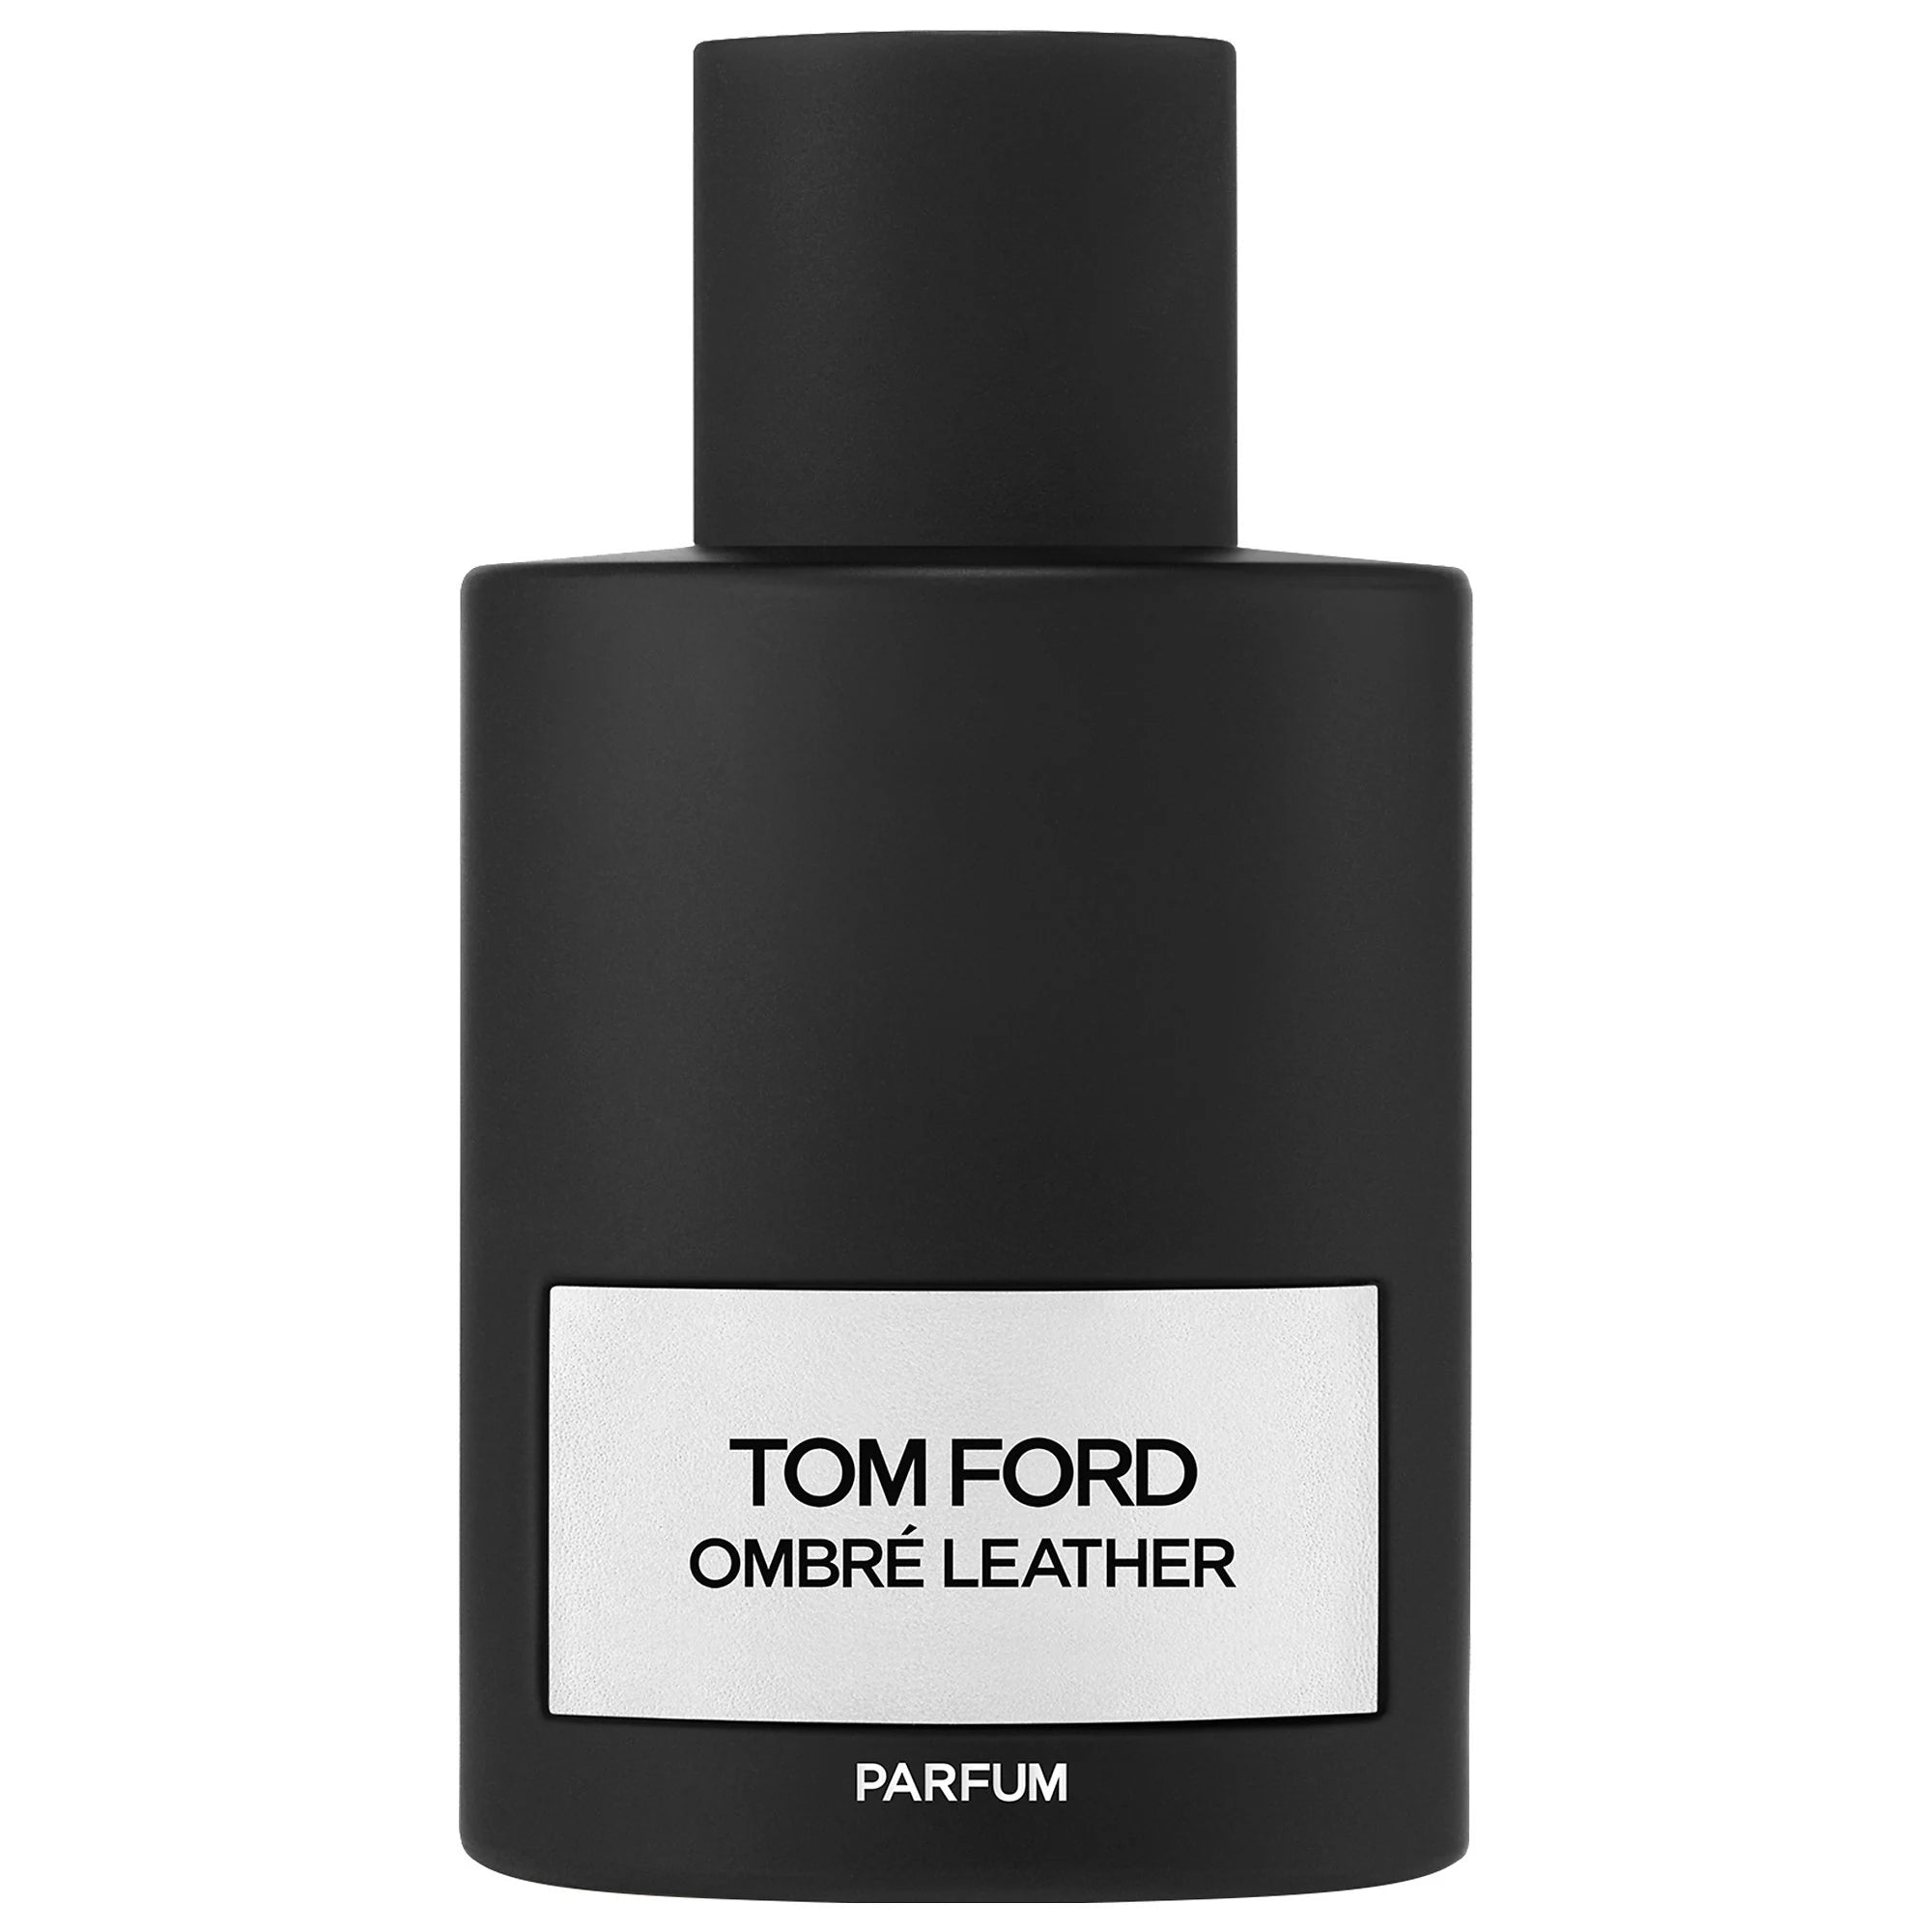 Perfume Tom Ford Ombre Leather Parfum (U) / 100 ml - 888066117692- Prive Perfumes Honduras